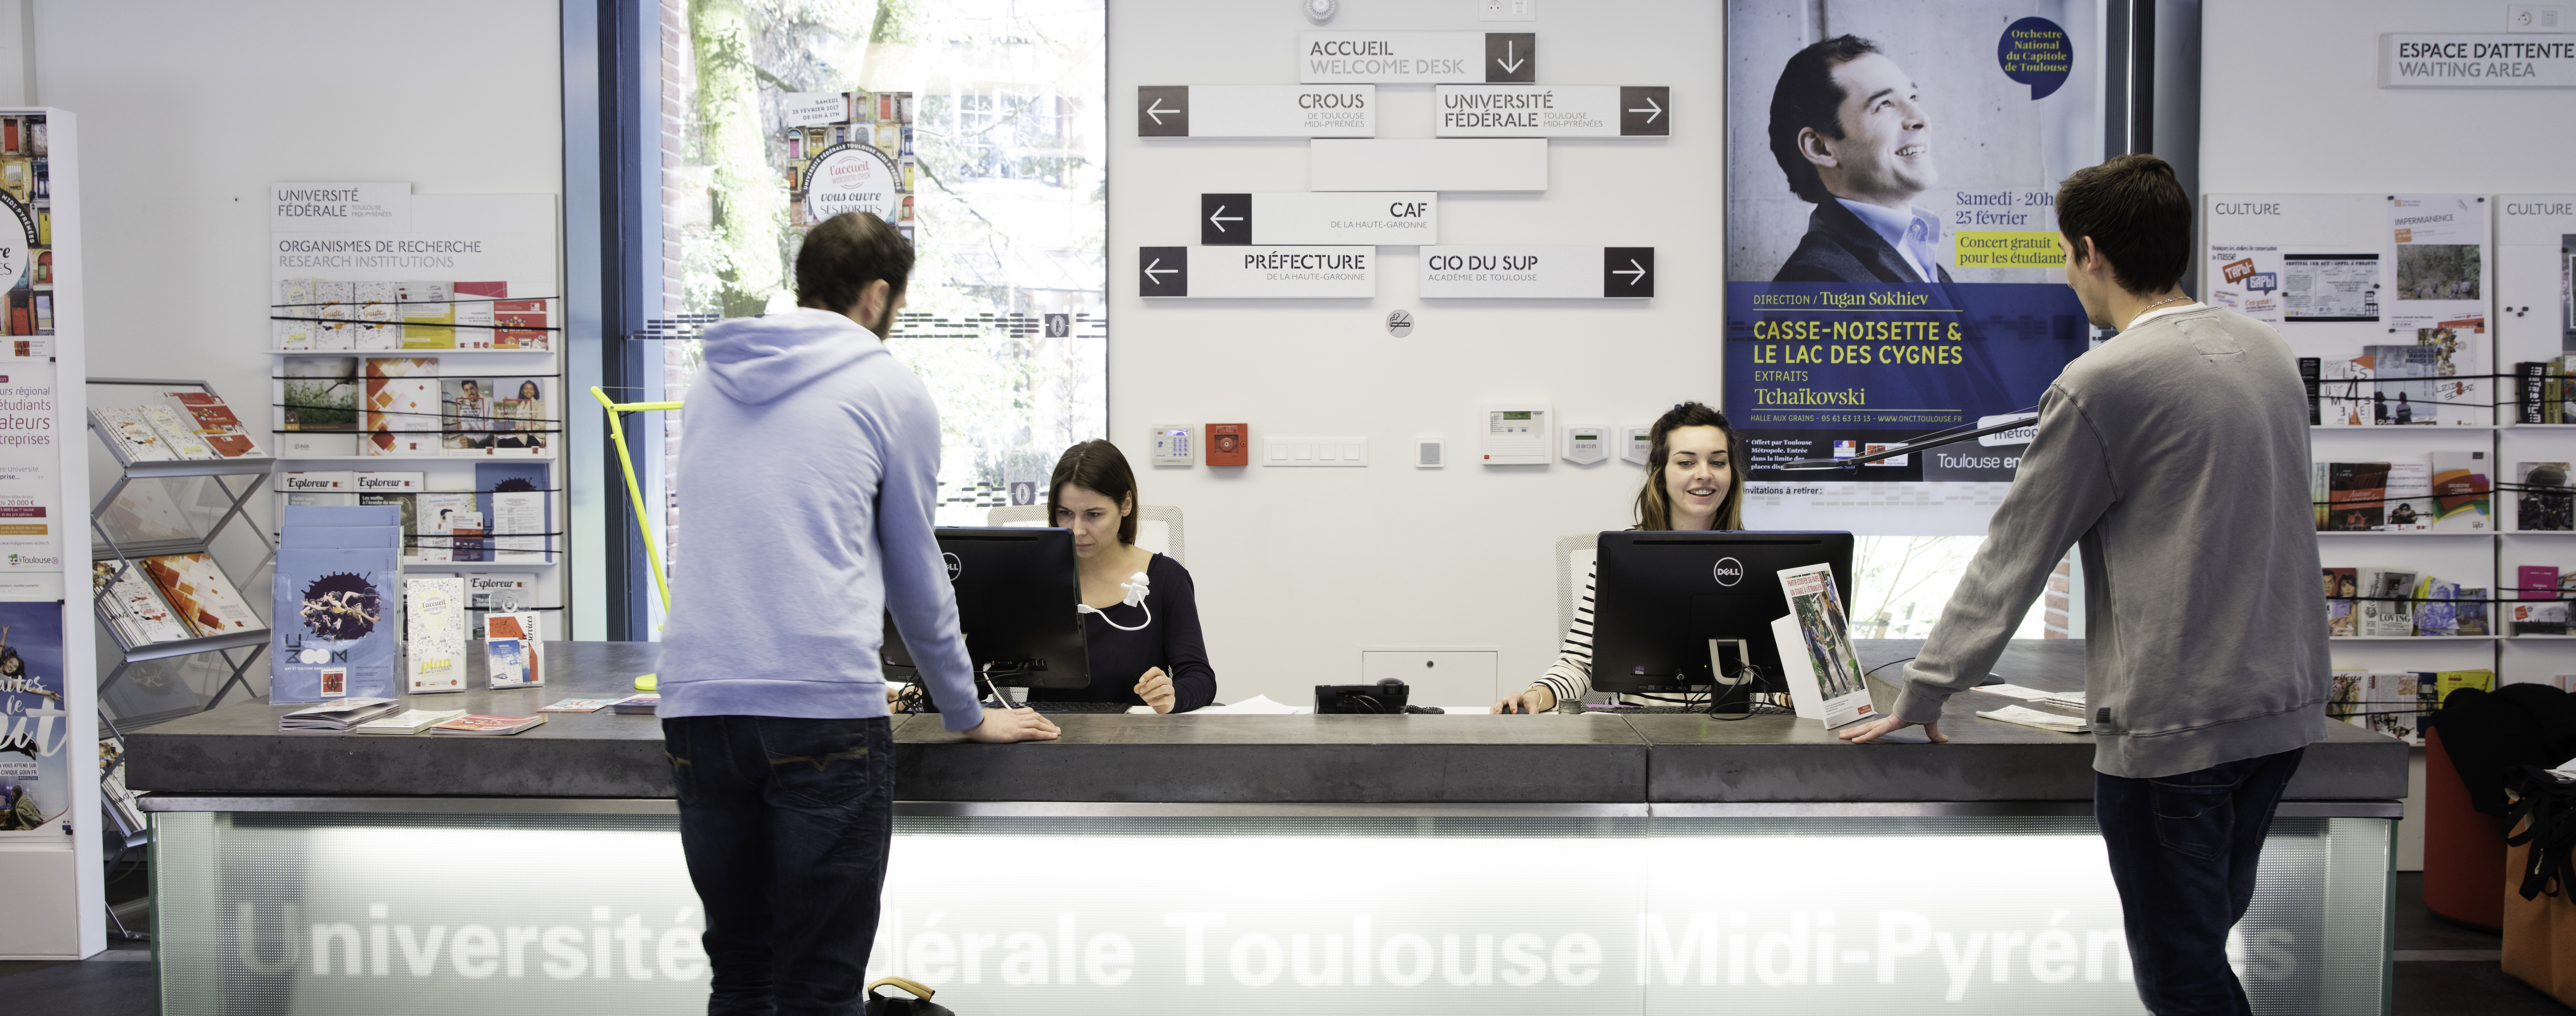 Staff Services Universite De Toulouse